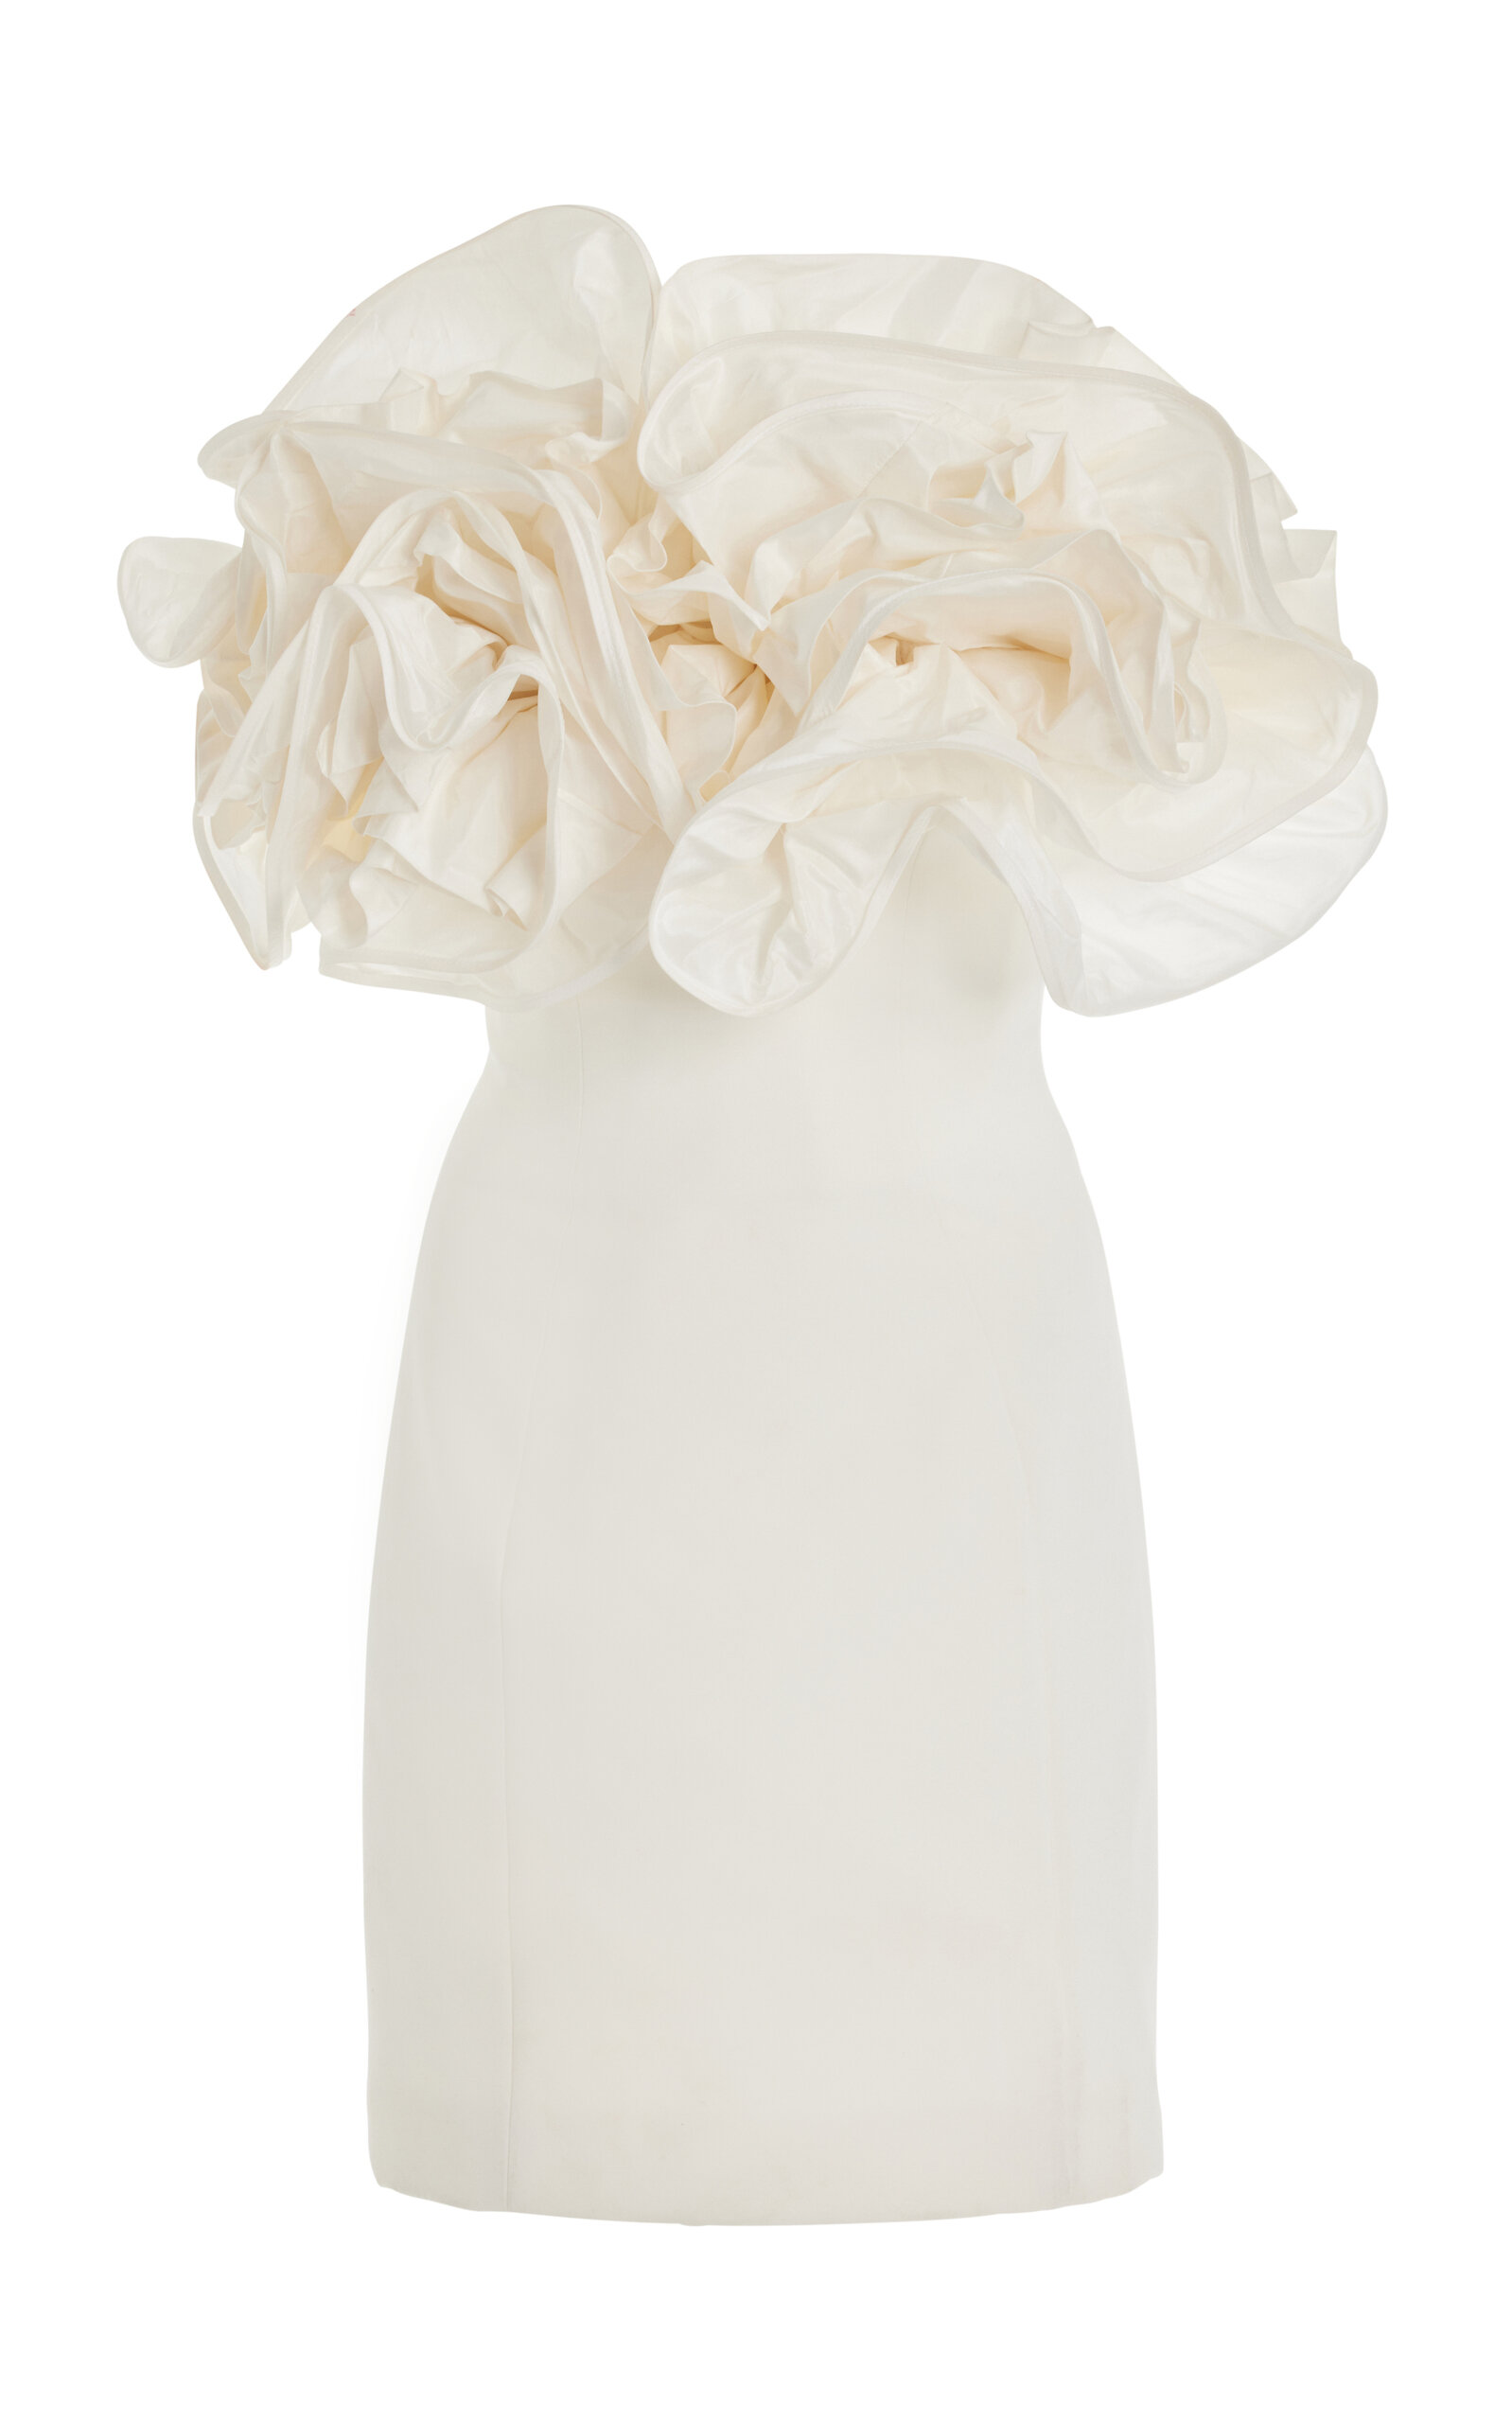 Carolina Herrera - Ruffled Mini Dress - White - US 4 - Moda Operandi